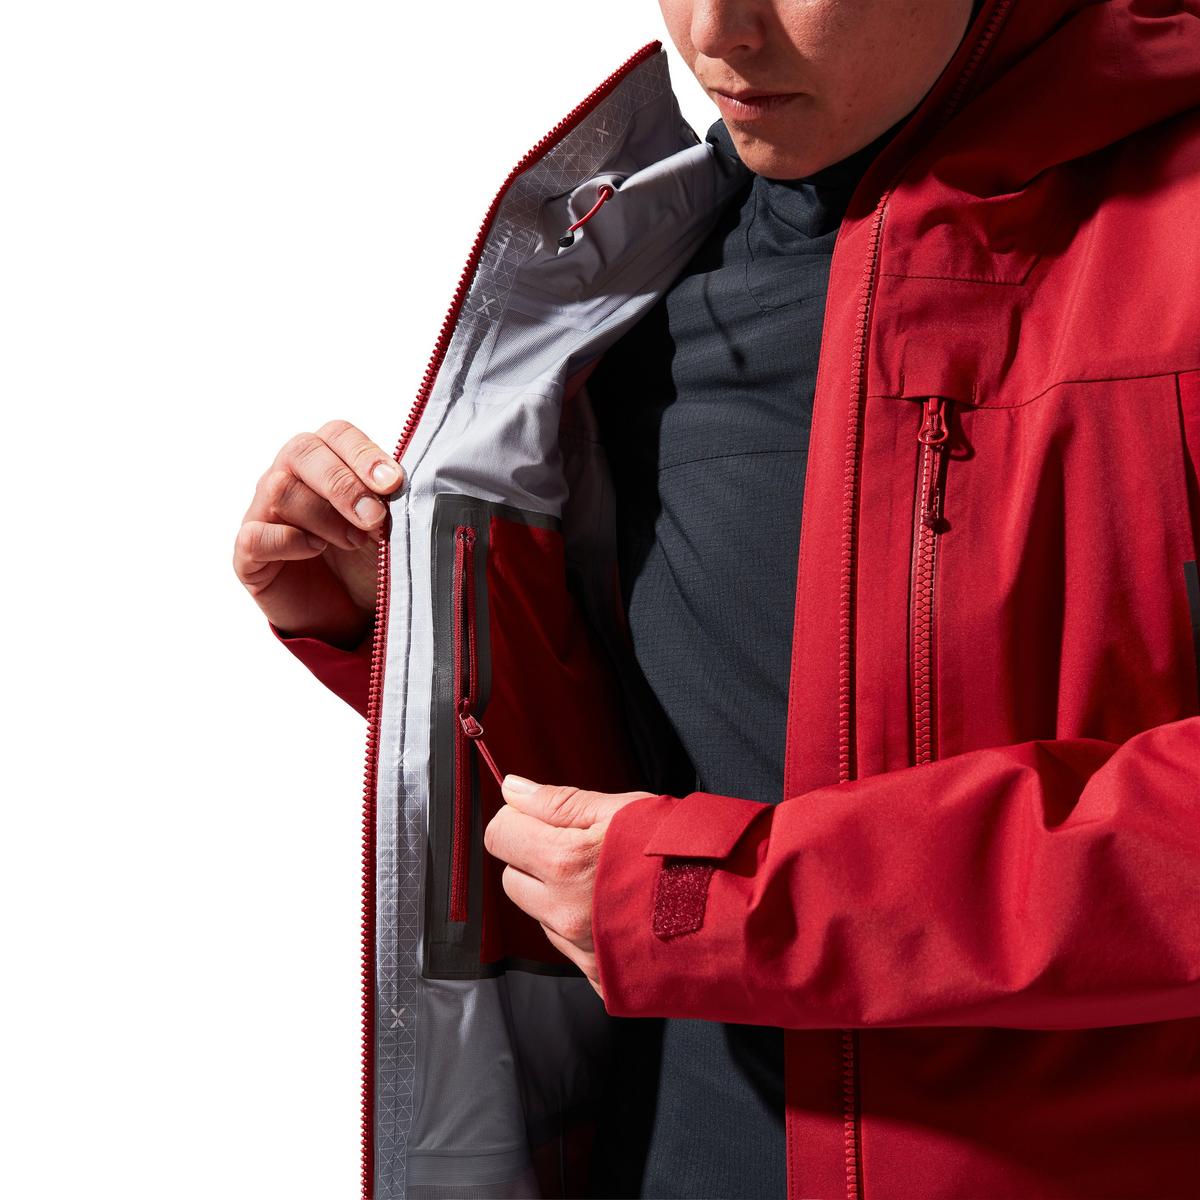 Berghaus Women's MTN Seeker GORE-TEX Jacket - Red